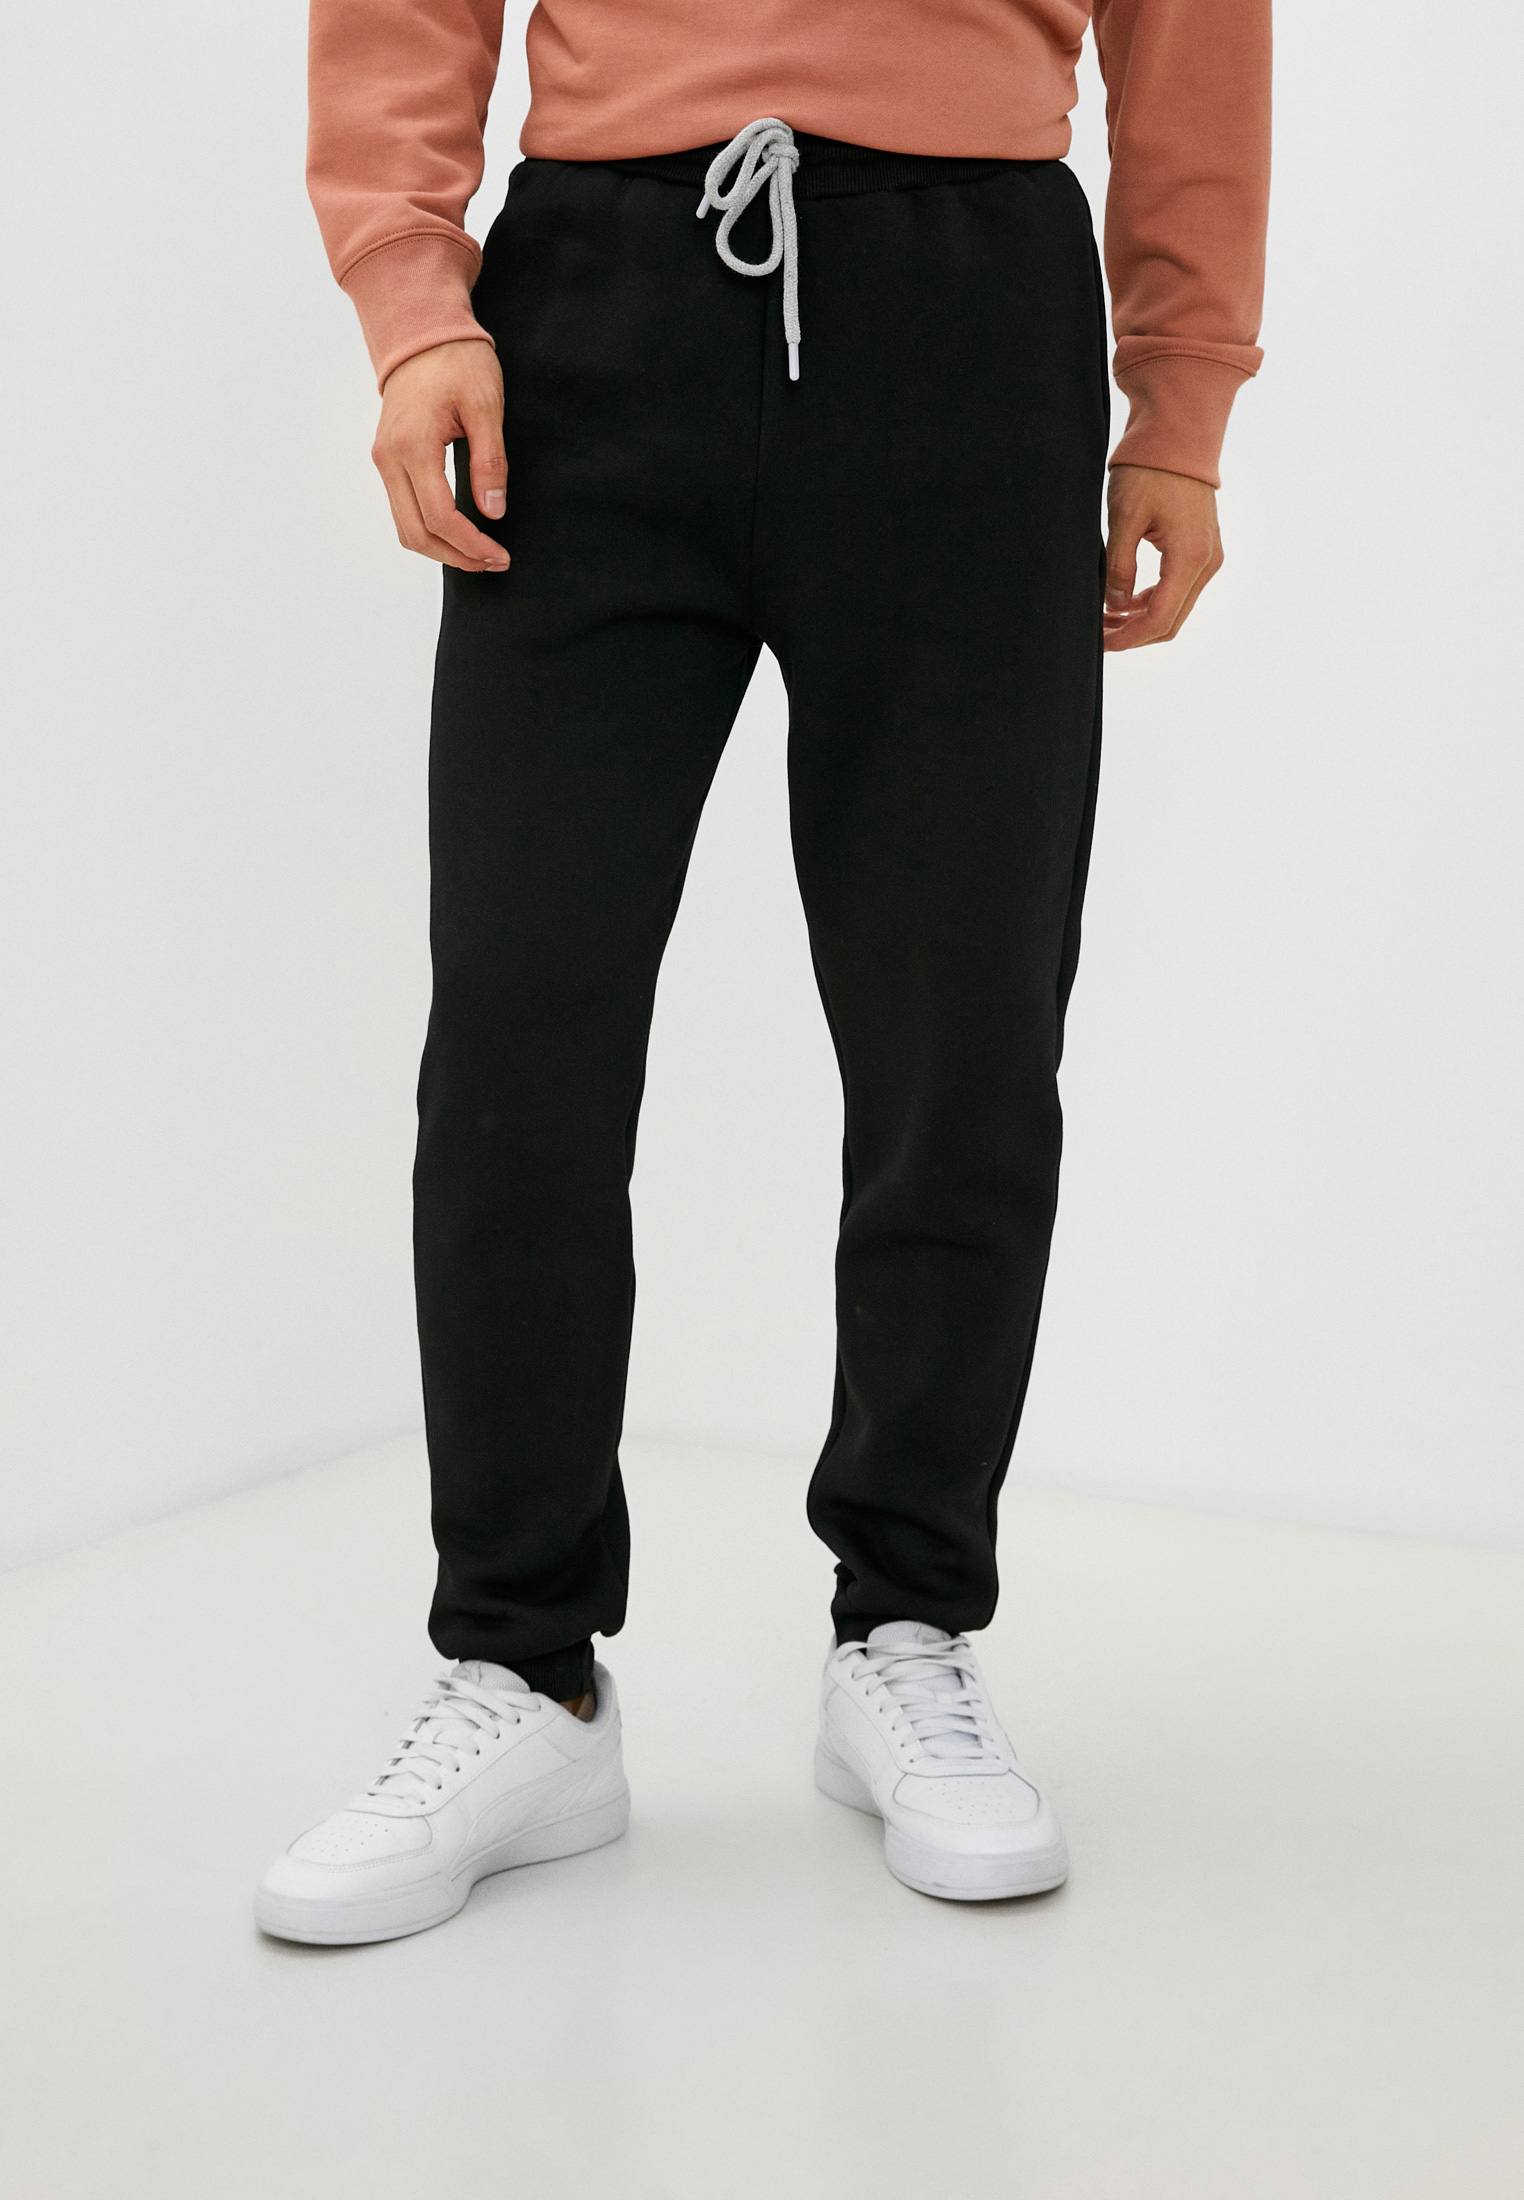 Спортивные брюки мужские BLACKSI 5216 черные M